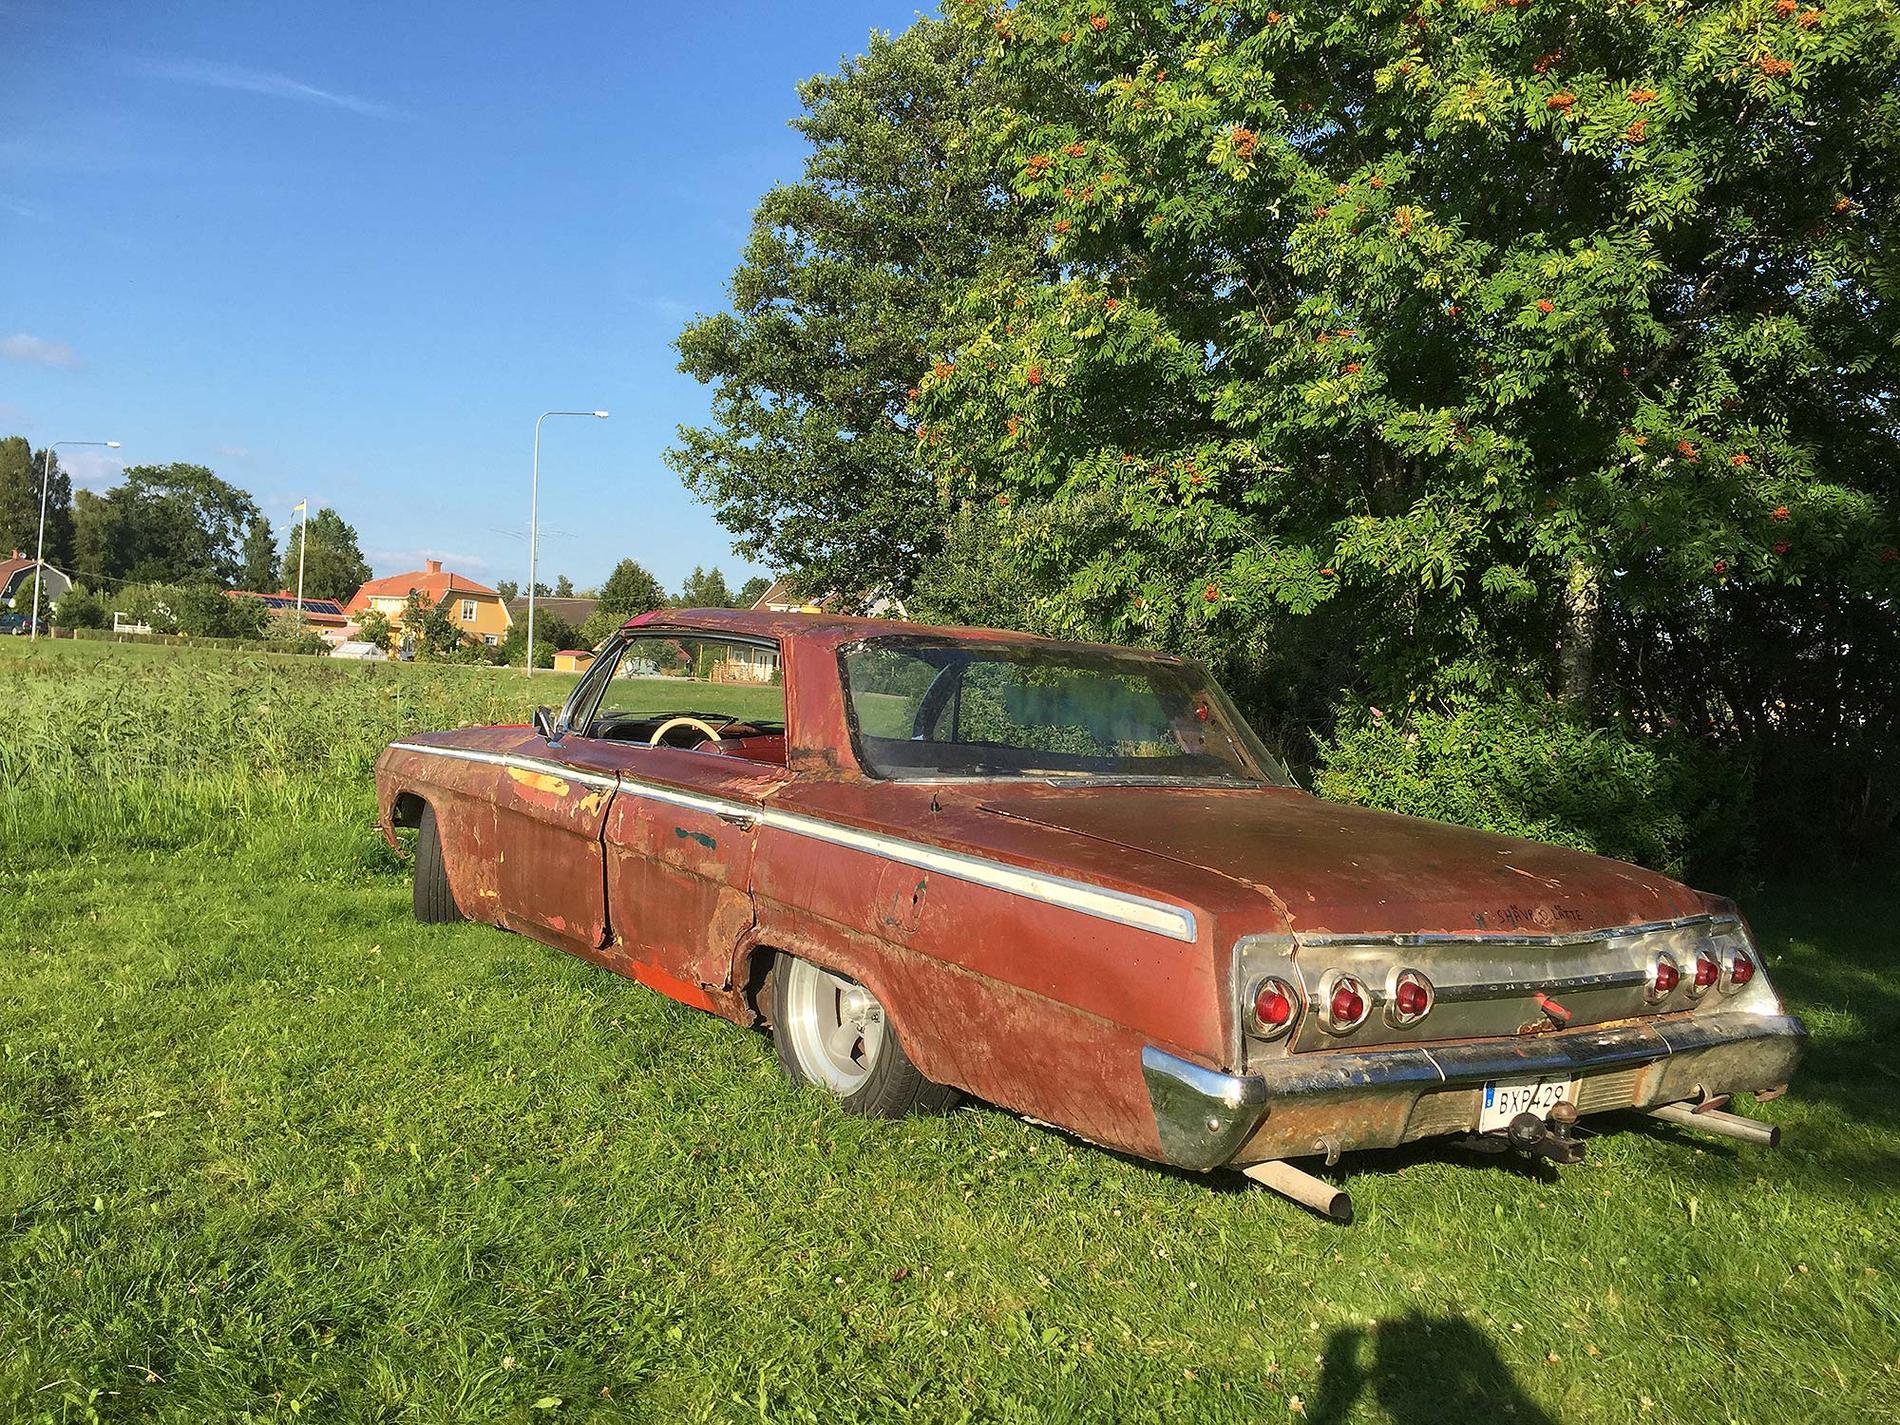 Impala från 1962. ”Denna skönhet har stått på skroten i 37 år men är nu tillbaka. Det har stått en Chevelle på taket, som nu är ihoplappat”, skriver en läsare.